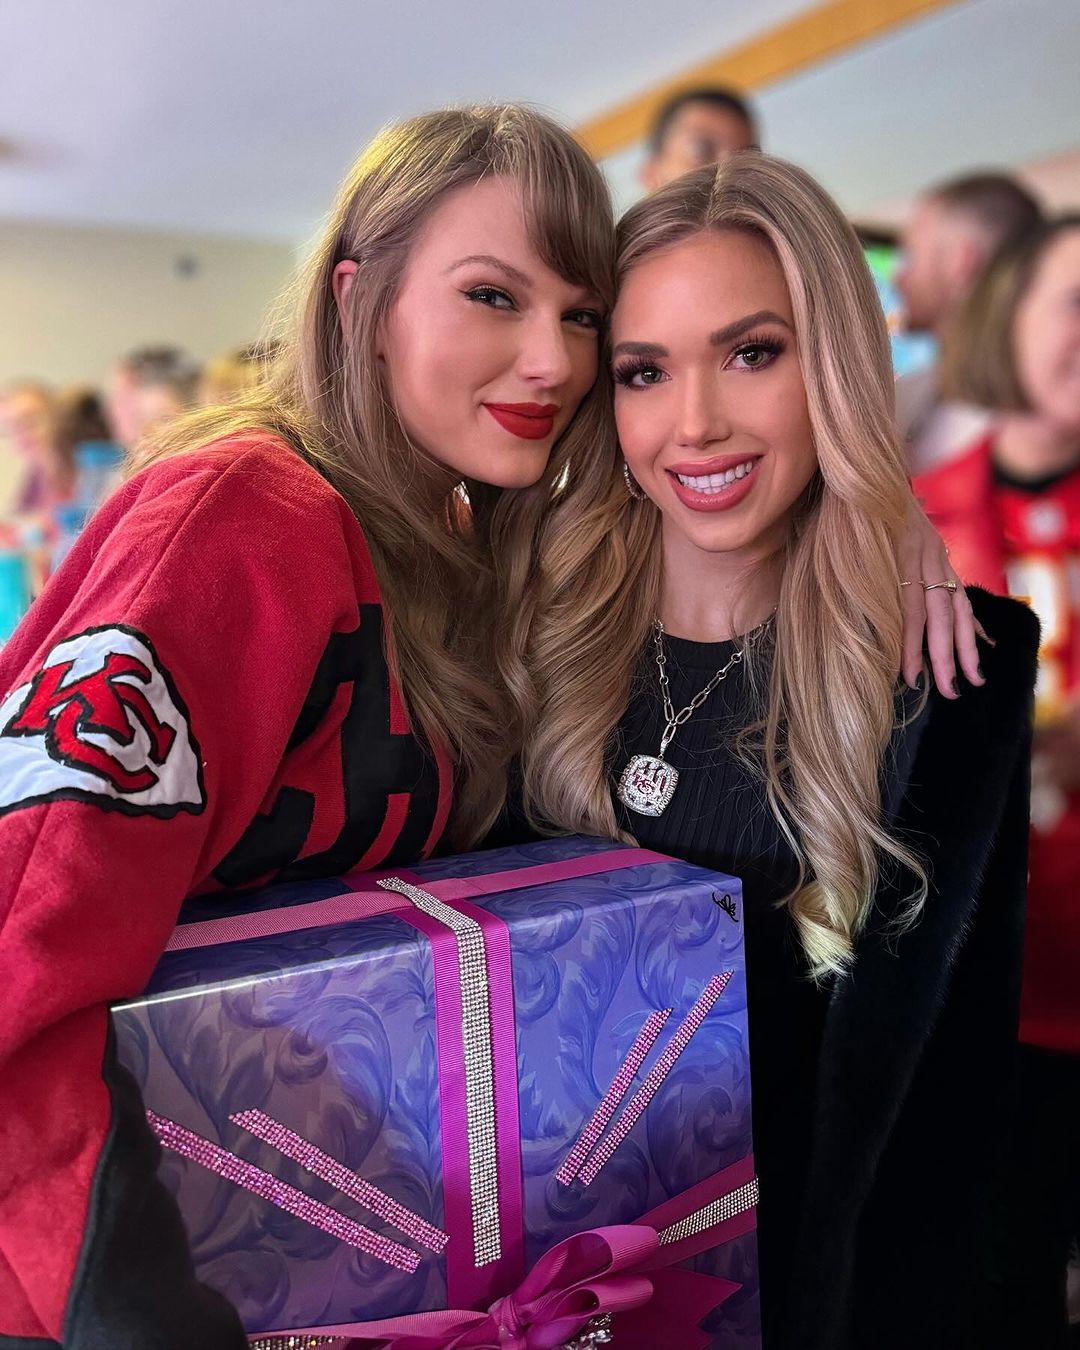 Voyez le cadeau coûteux que les héritières des Chiefs de Kansas City, Gracie et Ava Hunt, ont offert à Taylor Swift